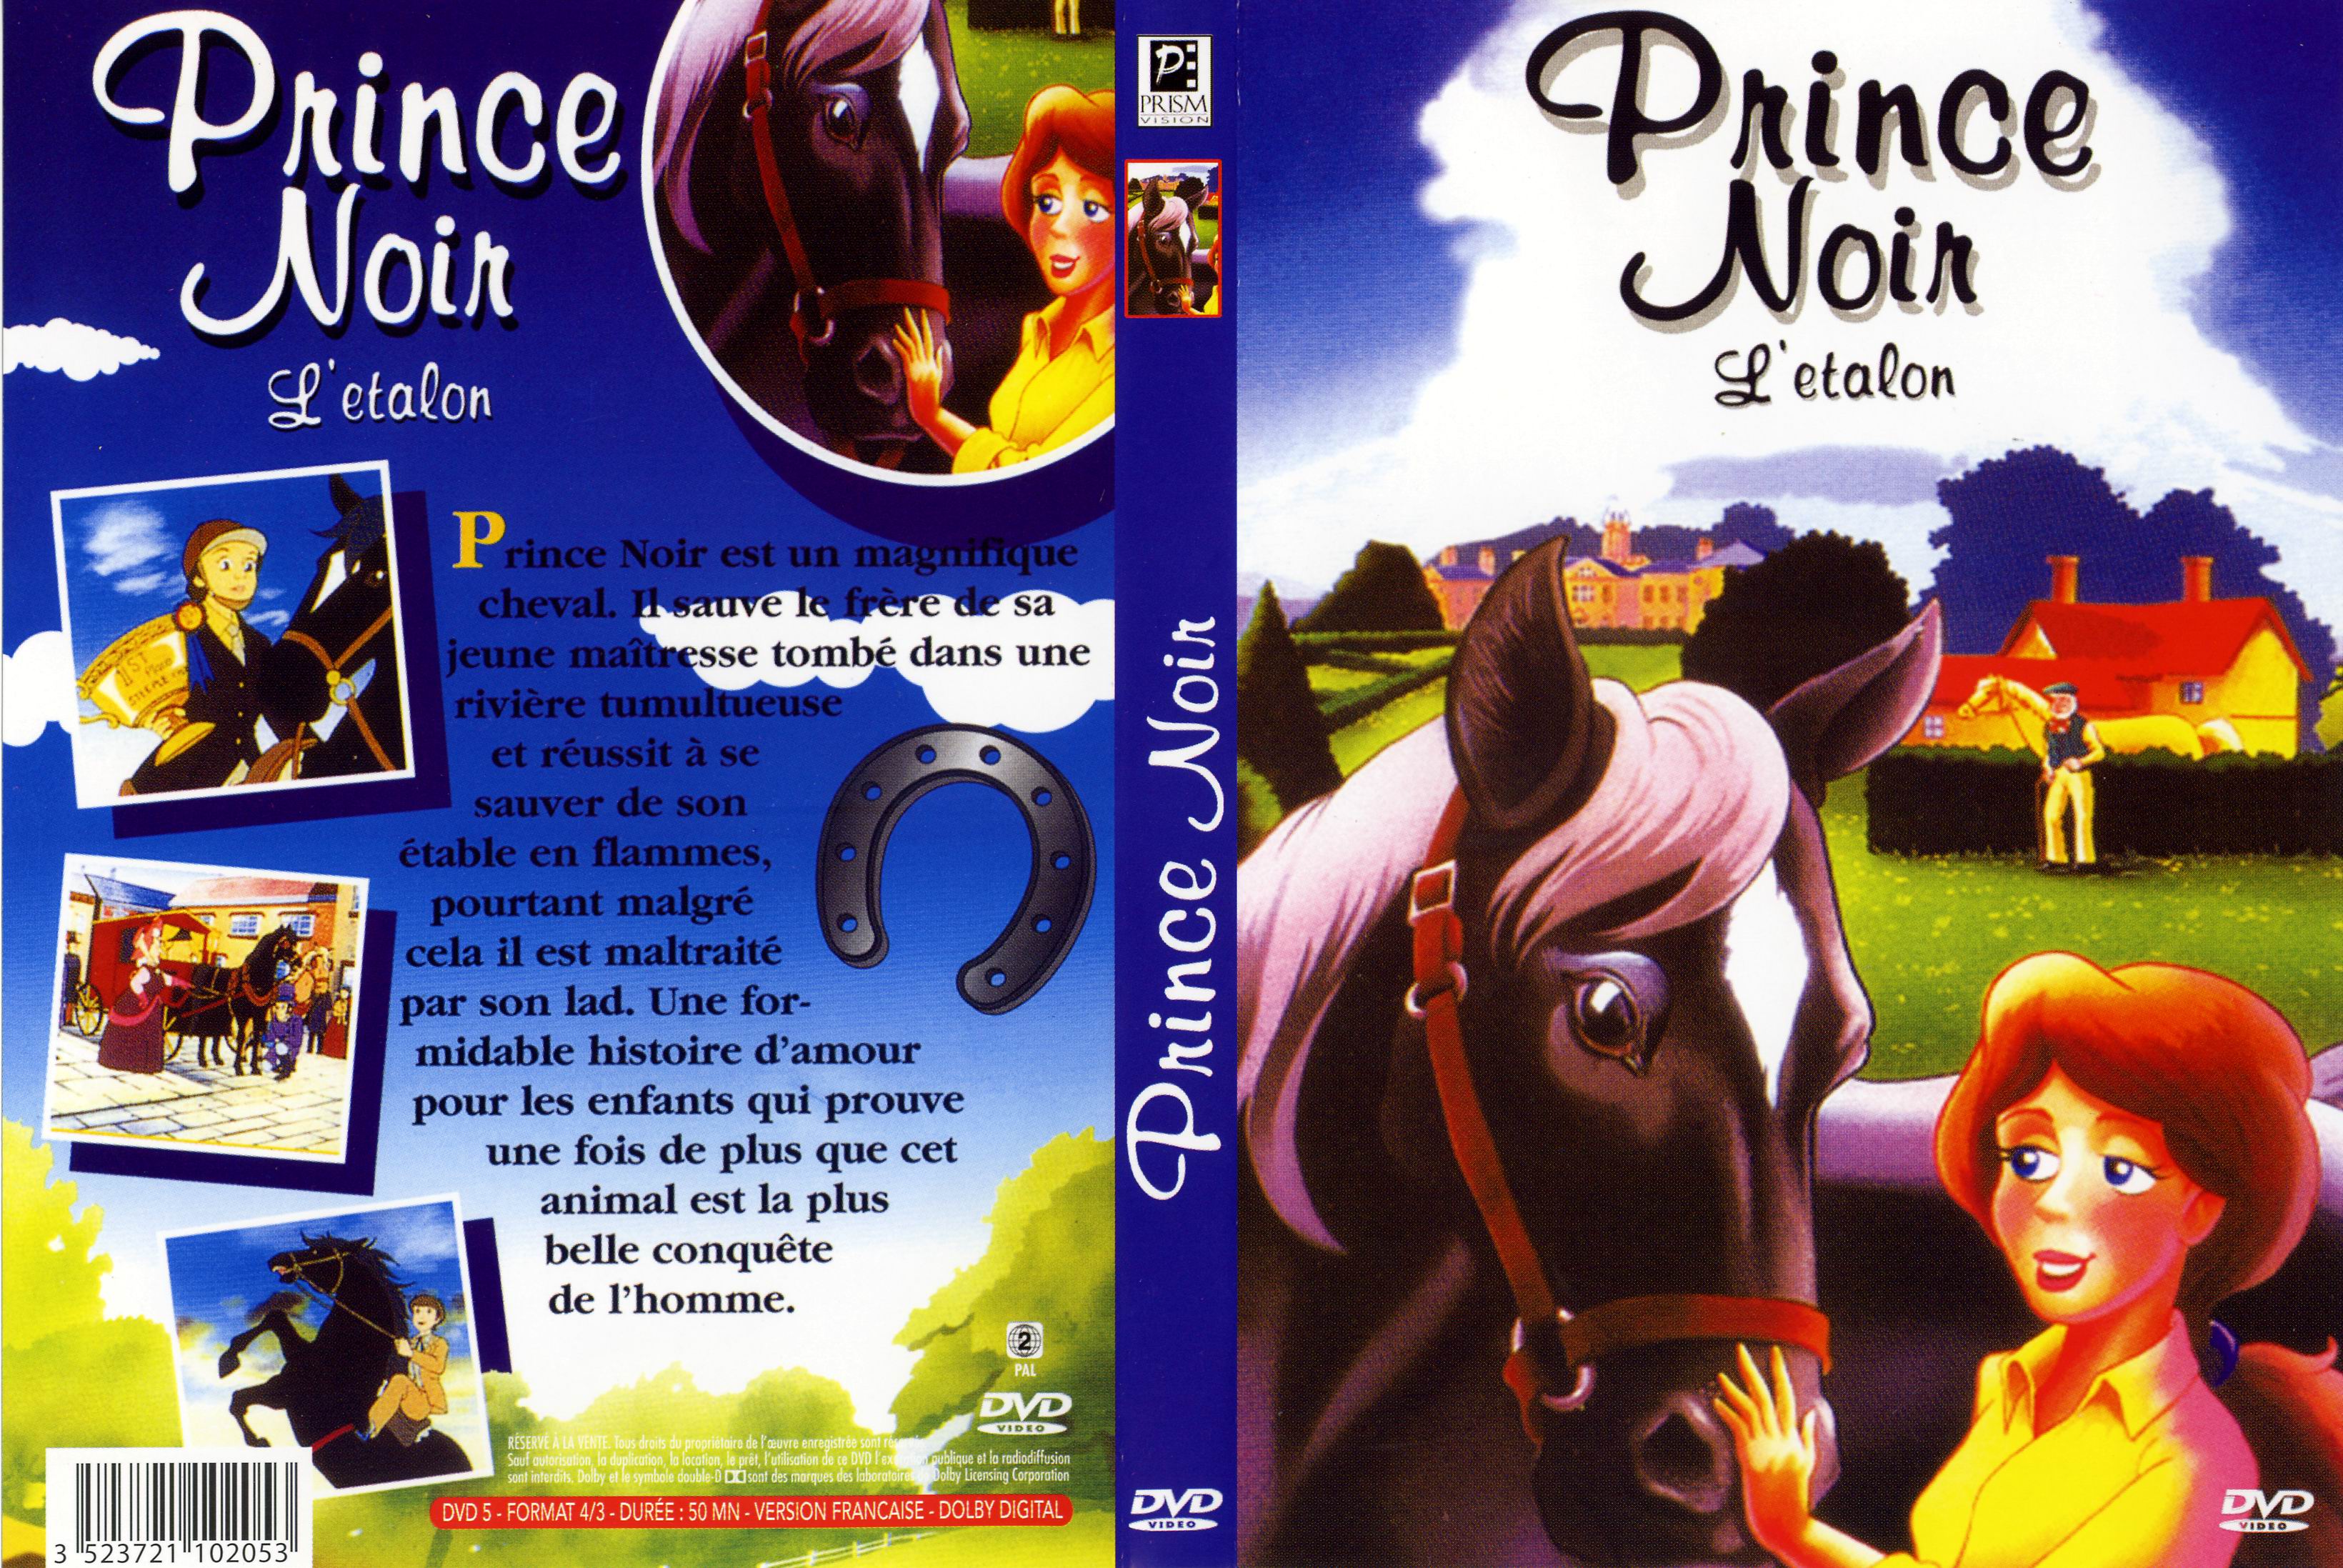 Jaquette DVD Prince noir l